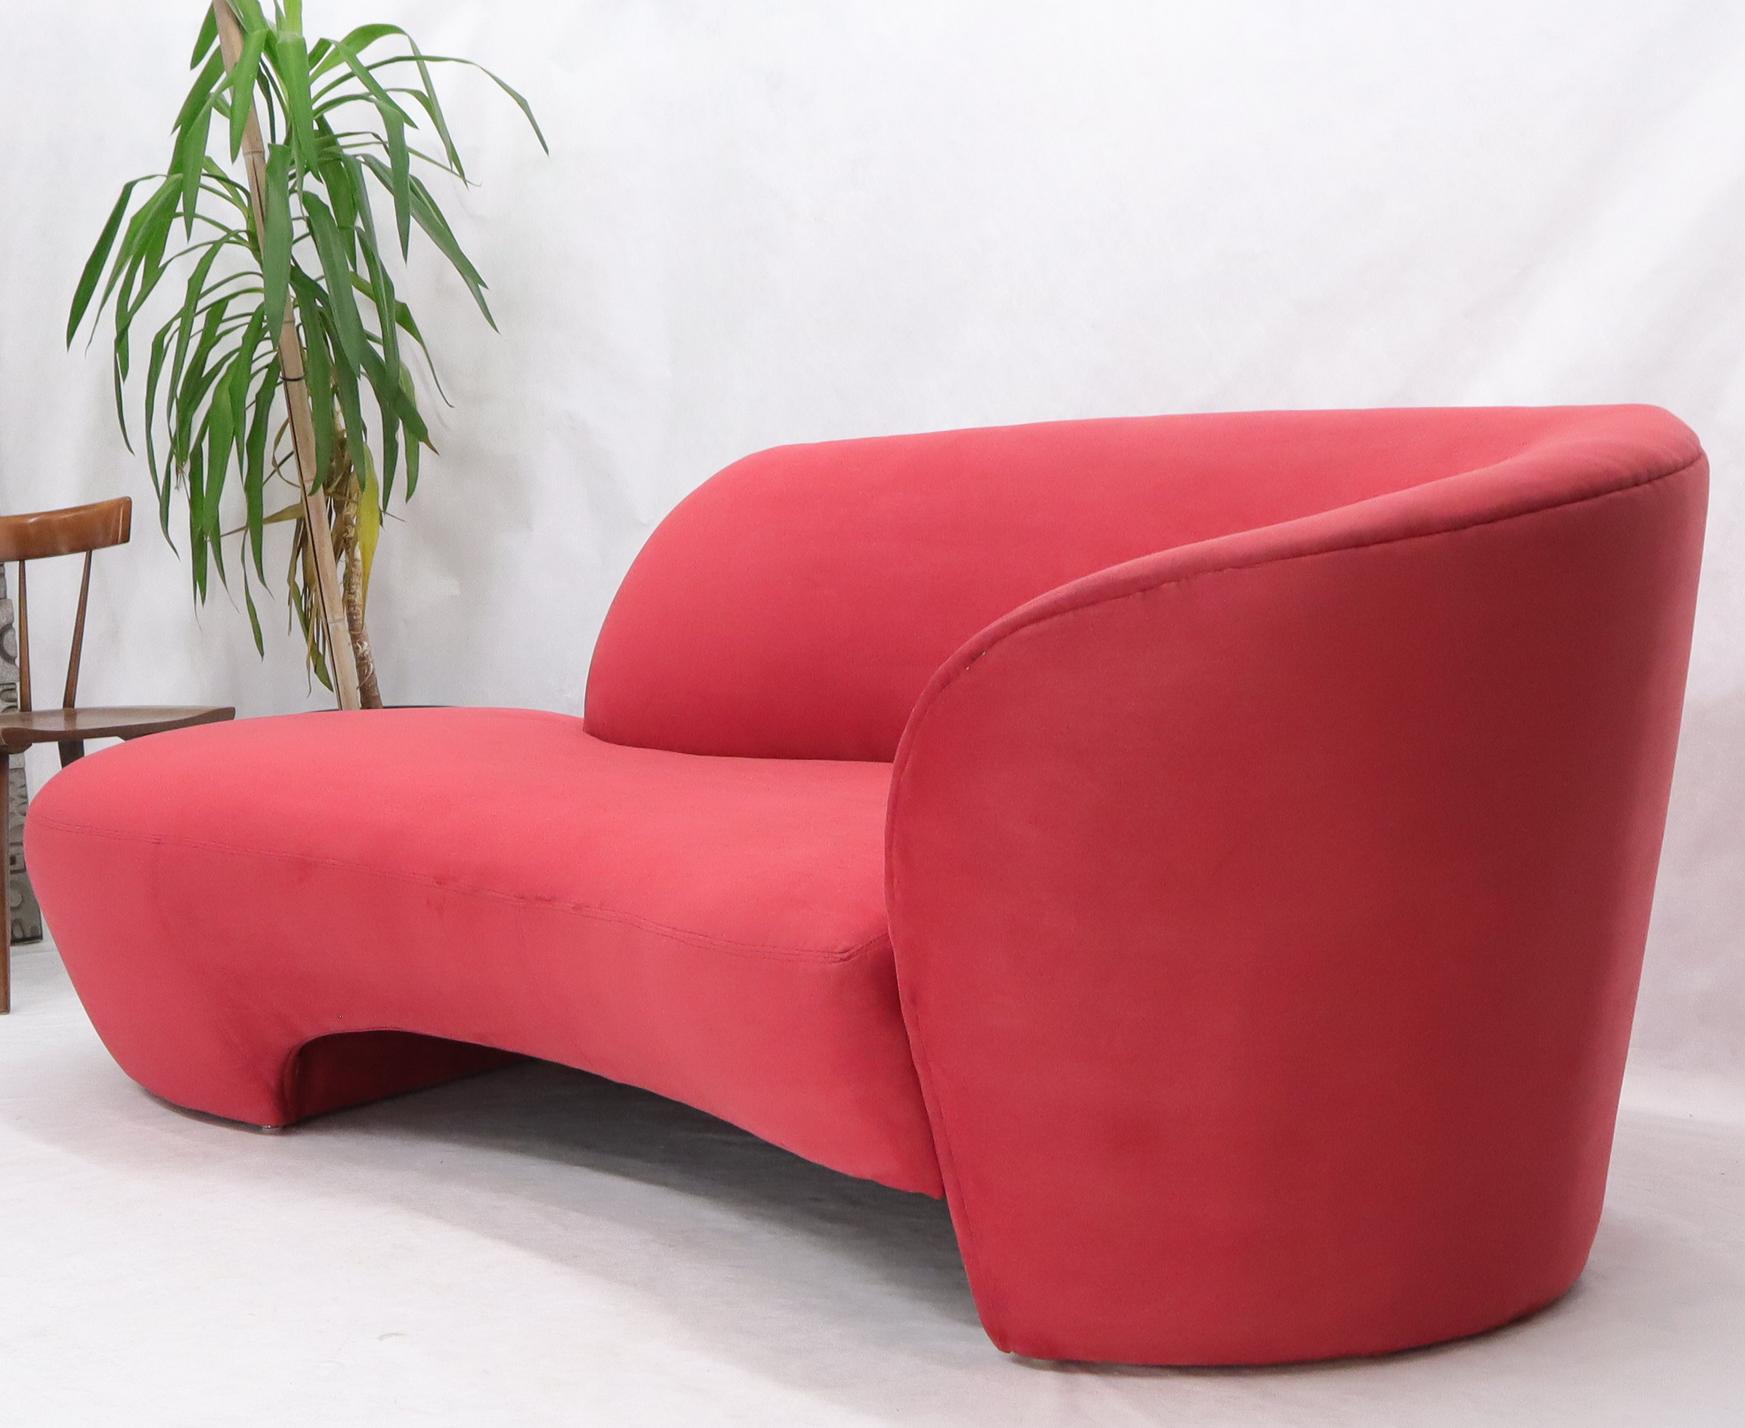 Américain Fauteuil Weiman préview de chaise longue en daim rouge en vente